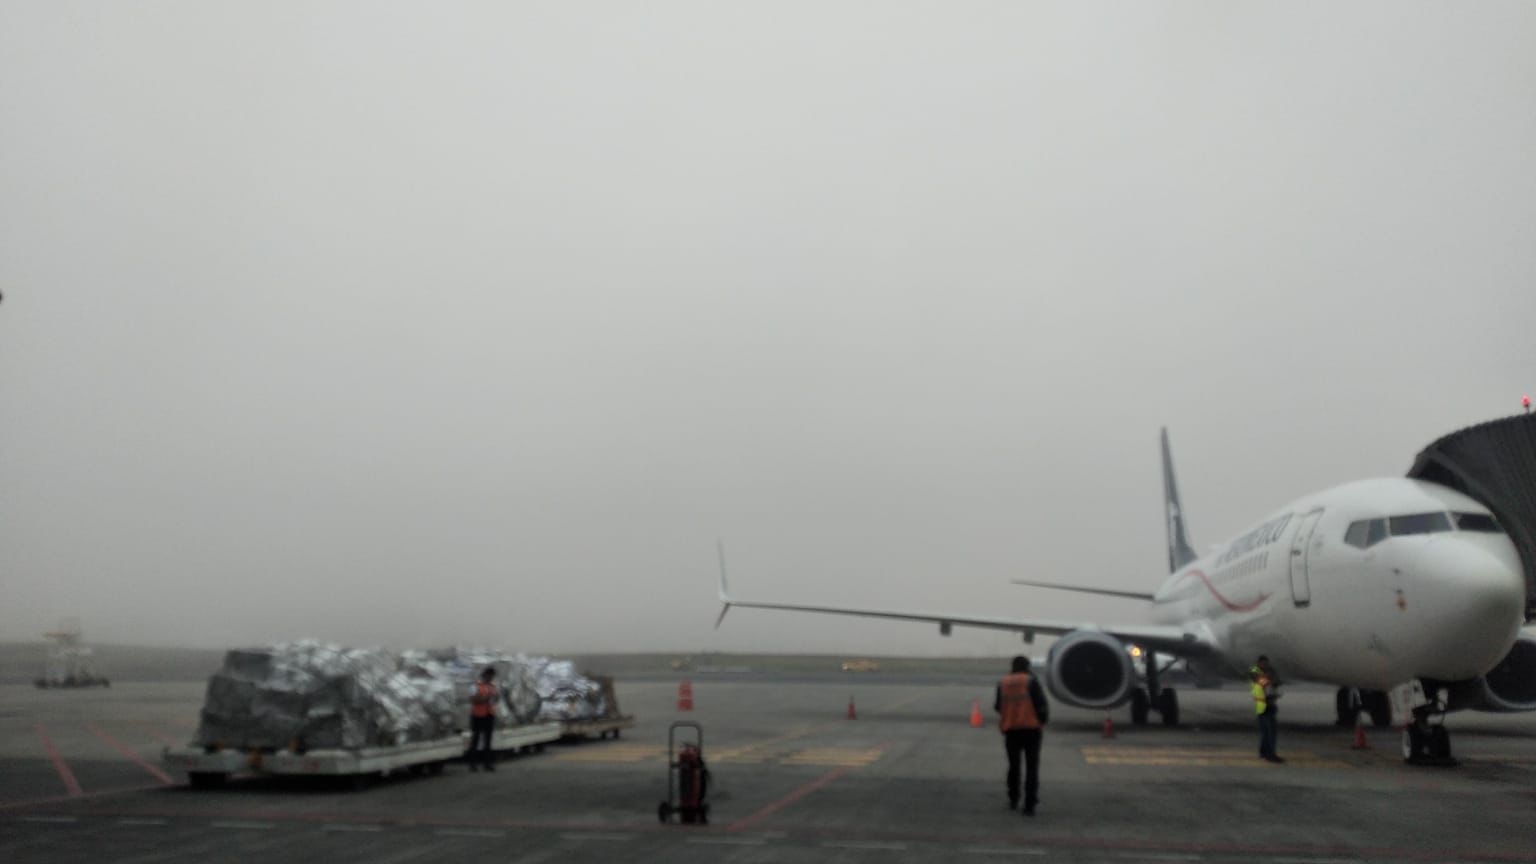 Las operaciones en La Aurora estÃ¡n suspendidas por las condiciones climÃ¡ticas que afectan la visibilidad. (Foto Prensa Libre: DGAC)